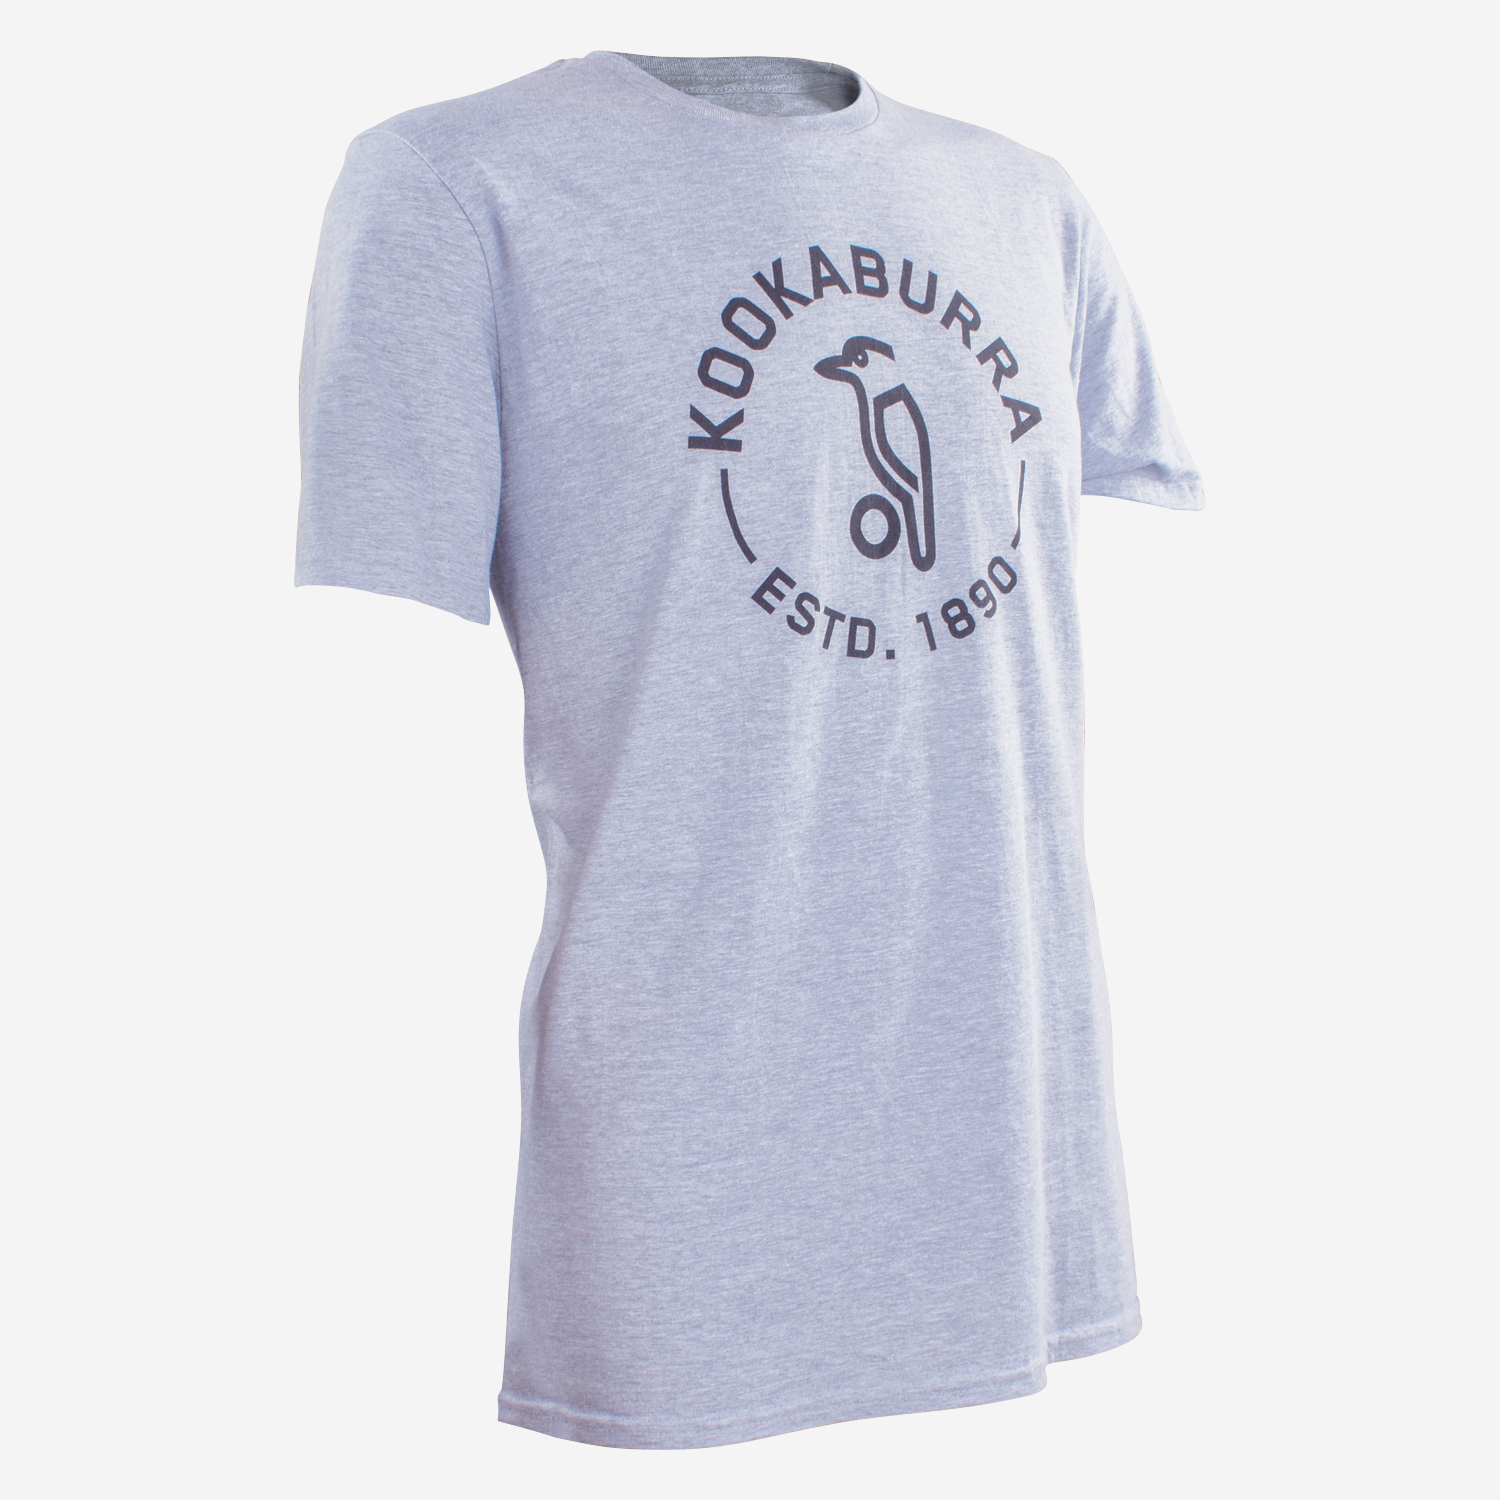 kookaburra-tee-shirt-grey